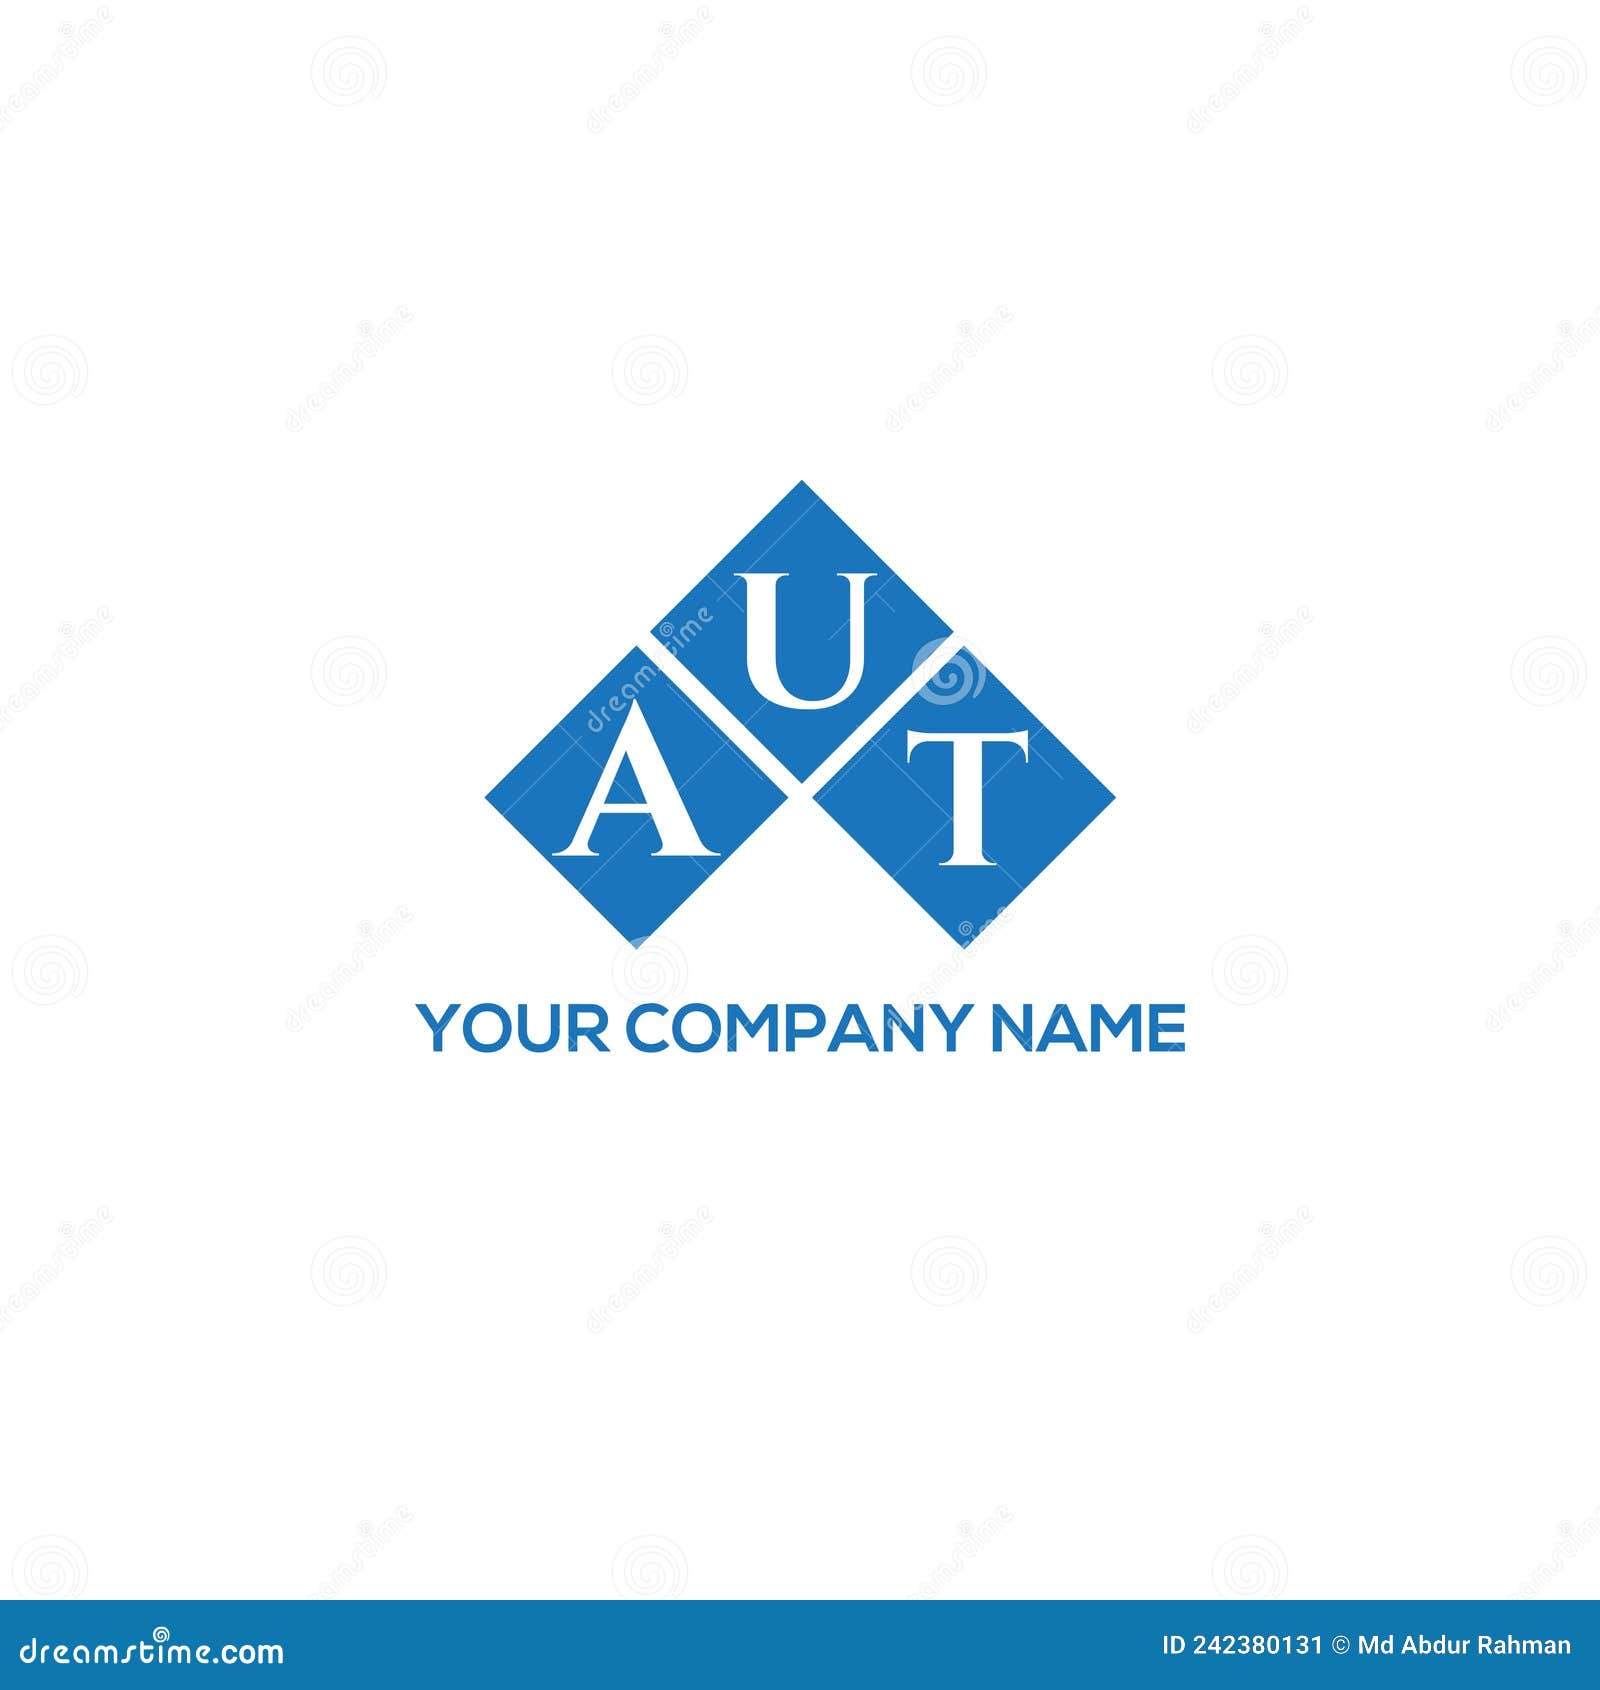 aut letter logo  on white background. aut creative initials letter logo concept. aut letter 